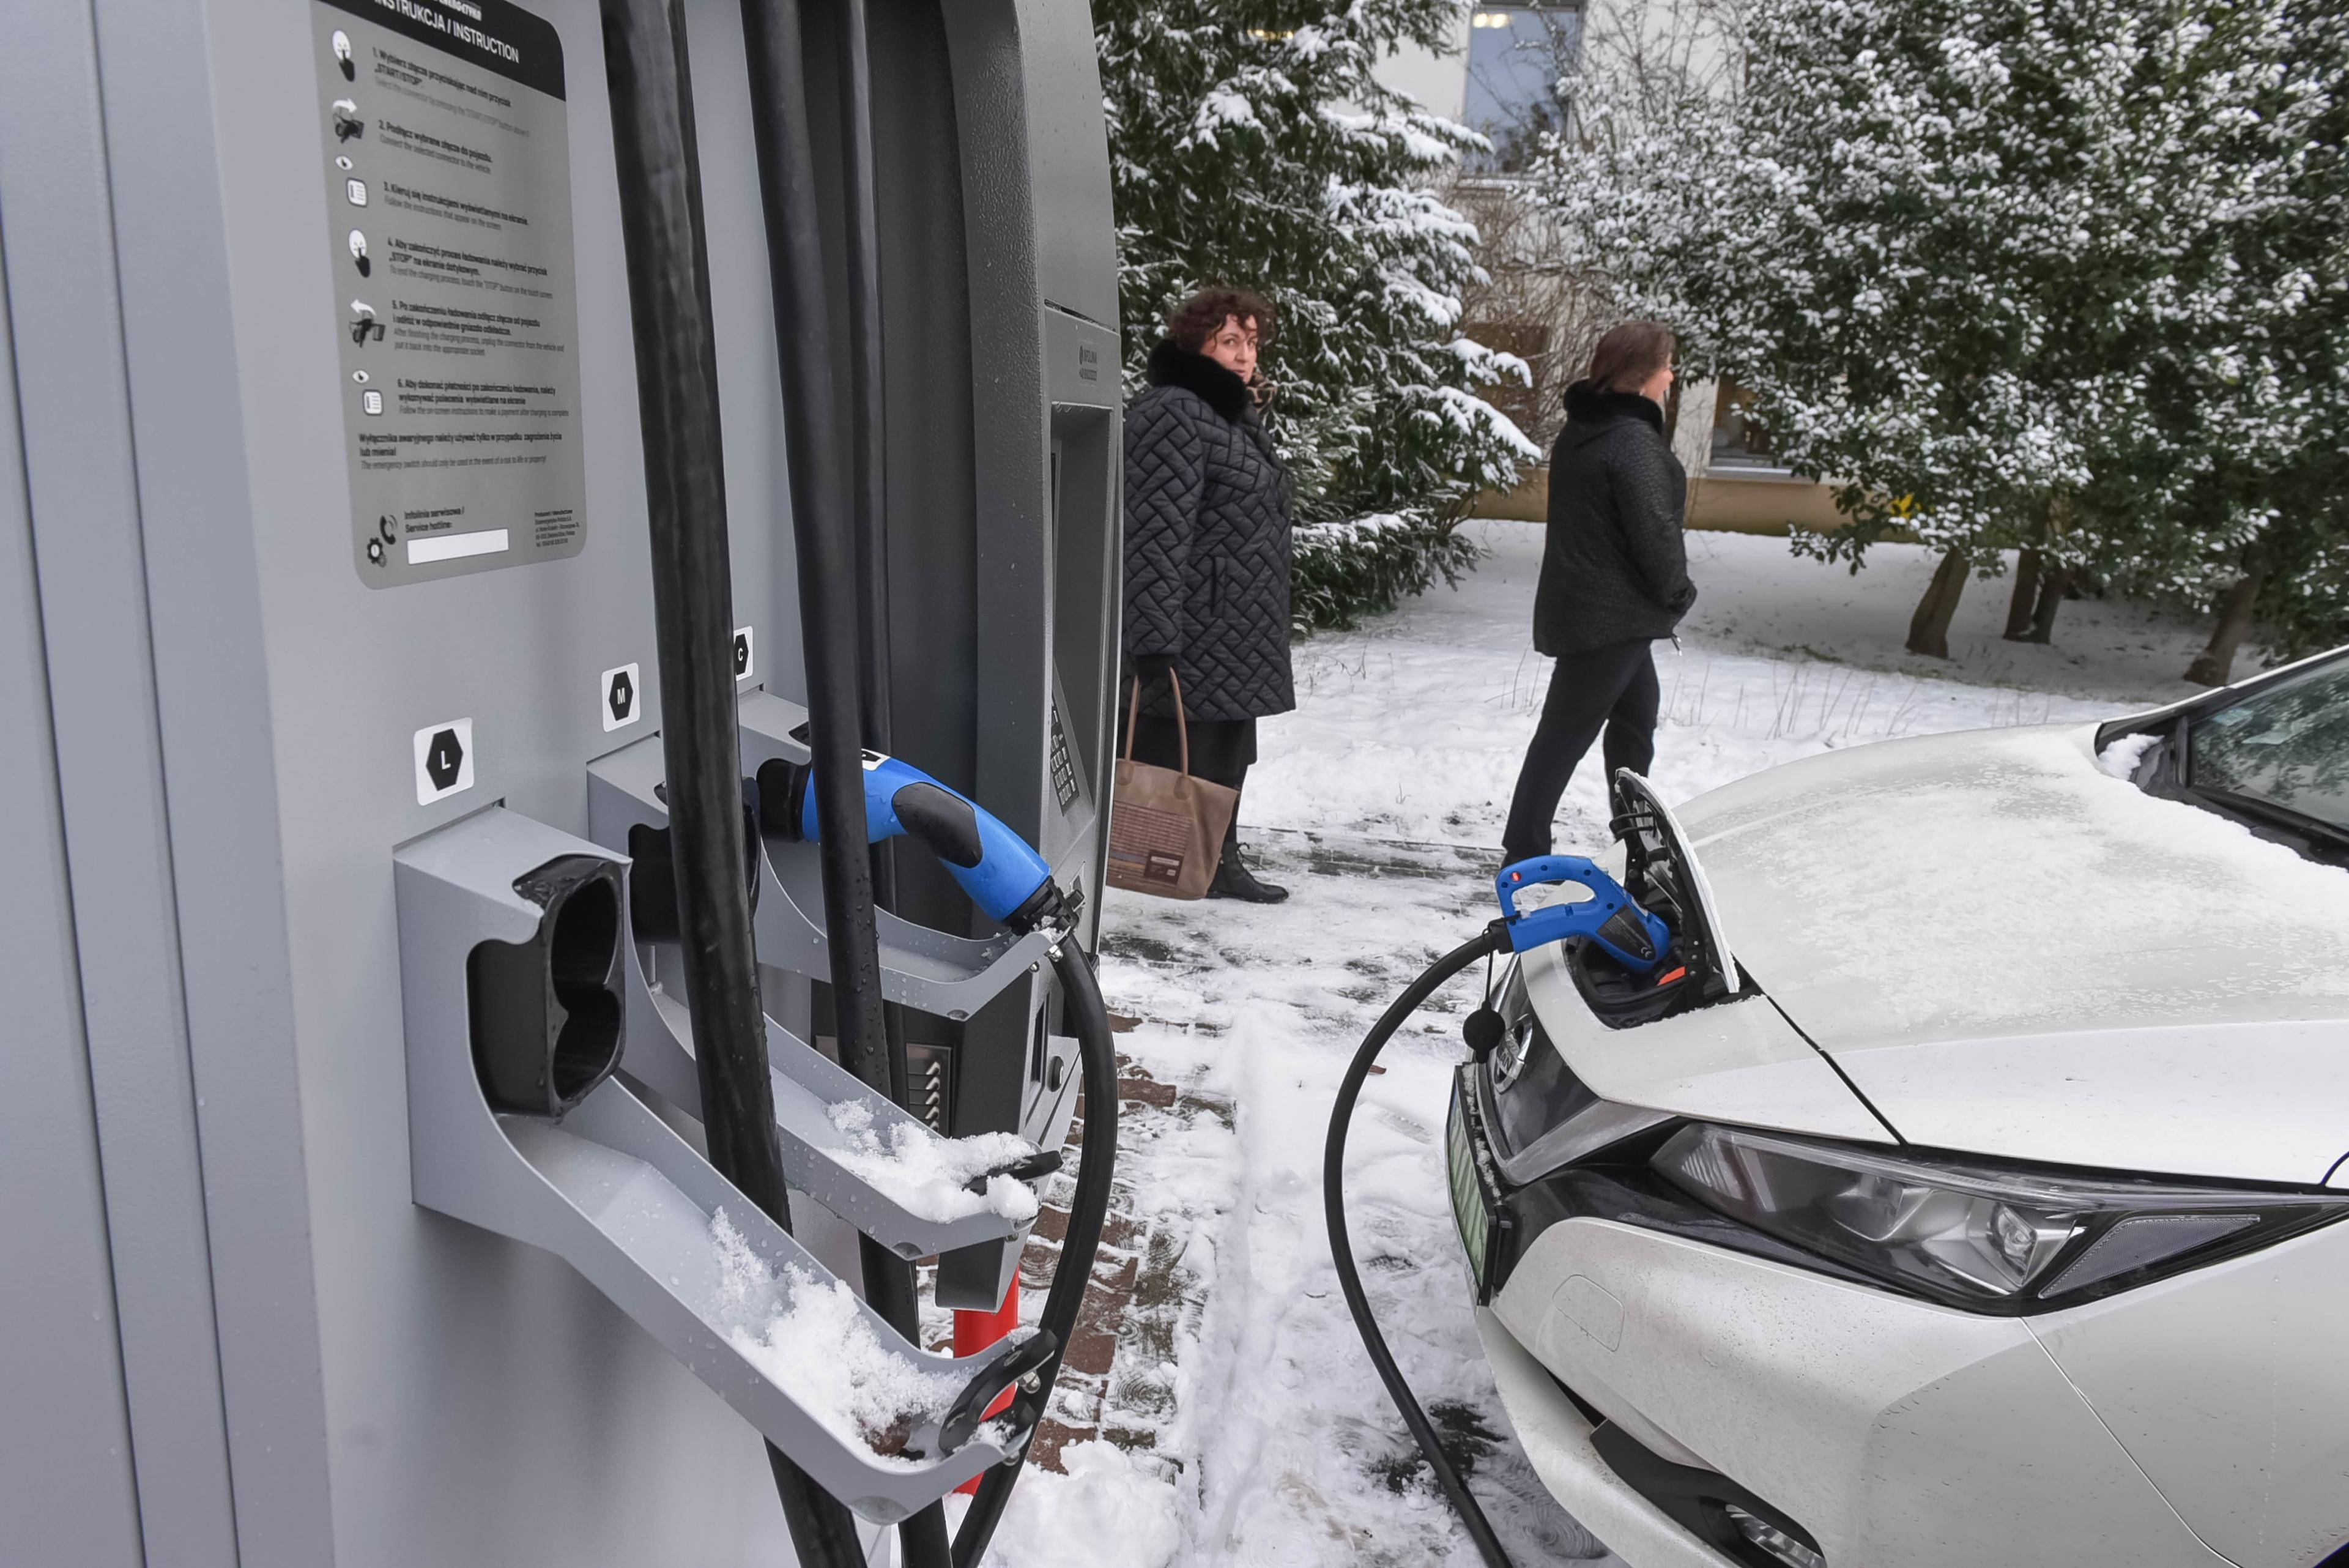 Stacja ladowania samochodów elektrycznych w Zielonej Górze, zimowy, śnieżny dzień, ładuje się Nissan Leaf